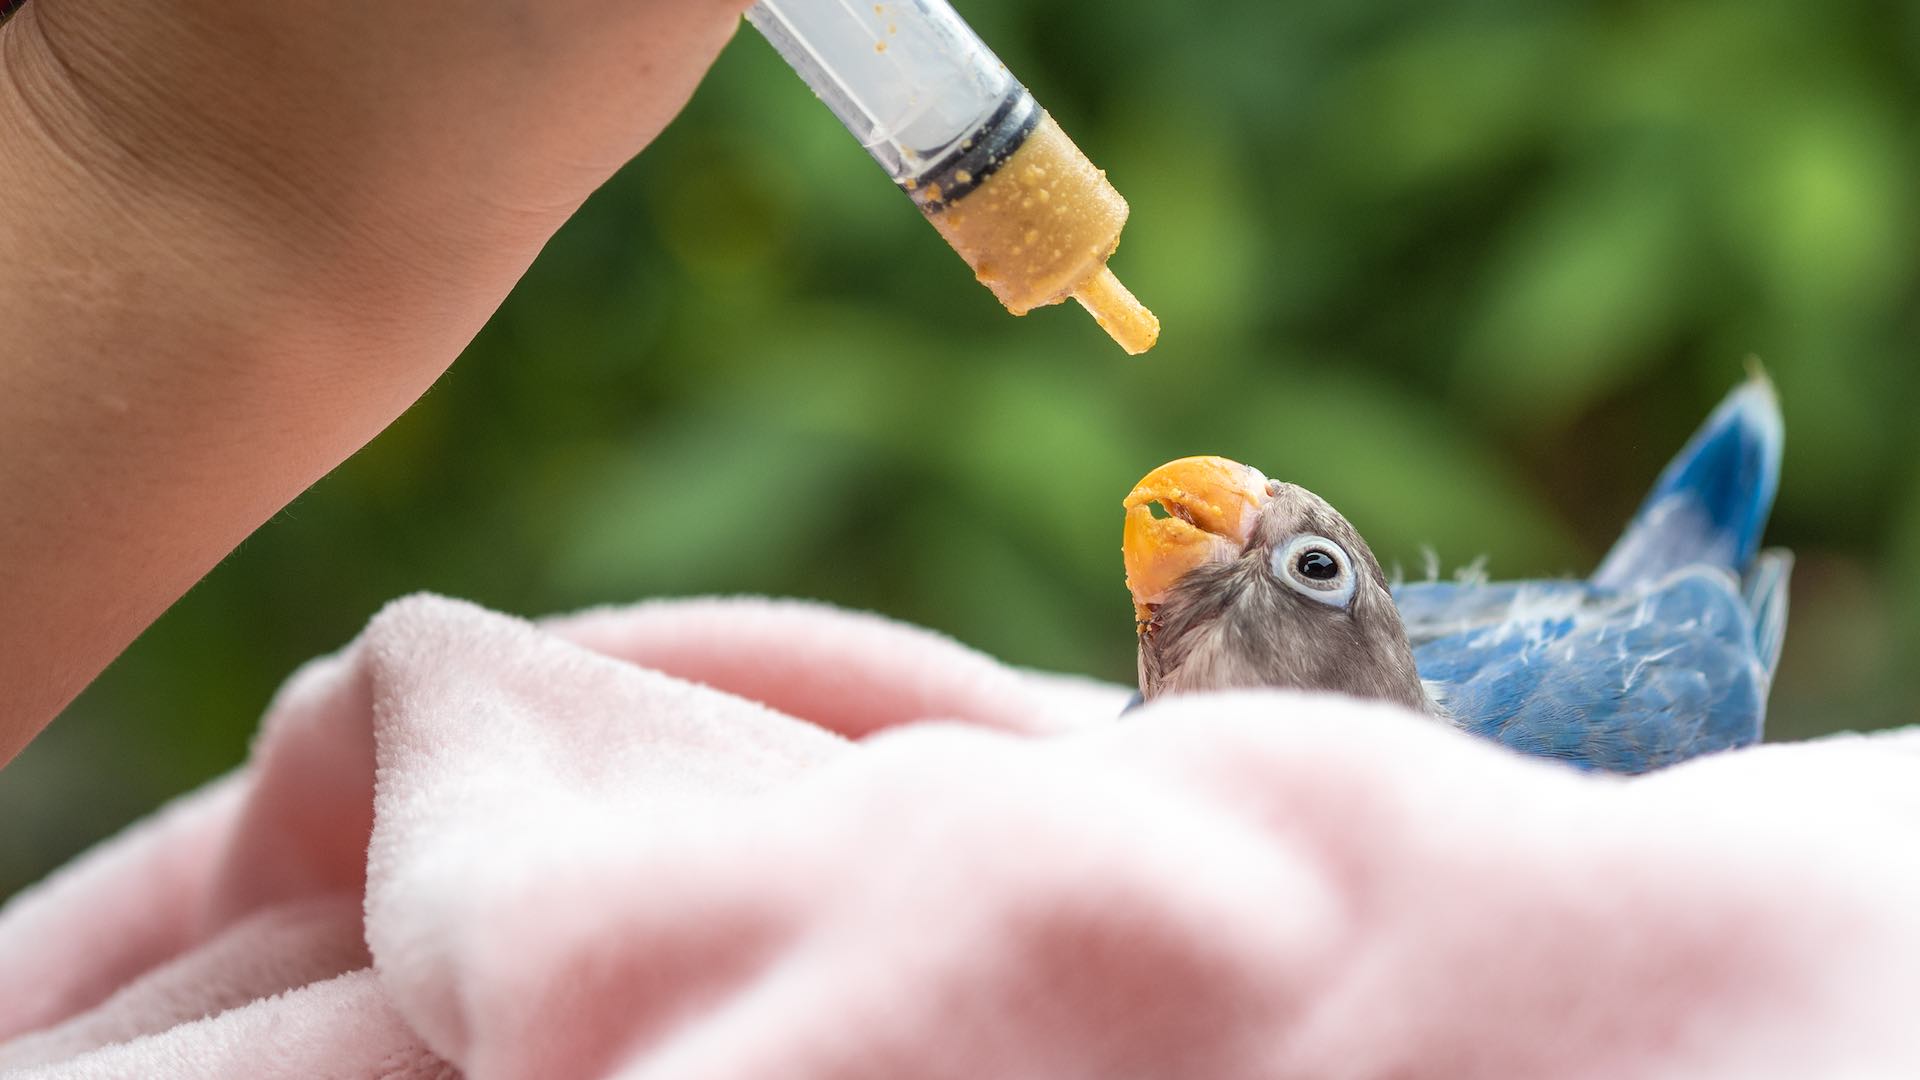 South American wildlife ravaged by H5N1 bird flu outbreak